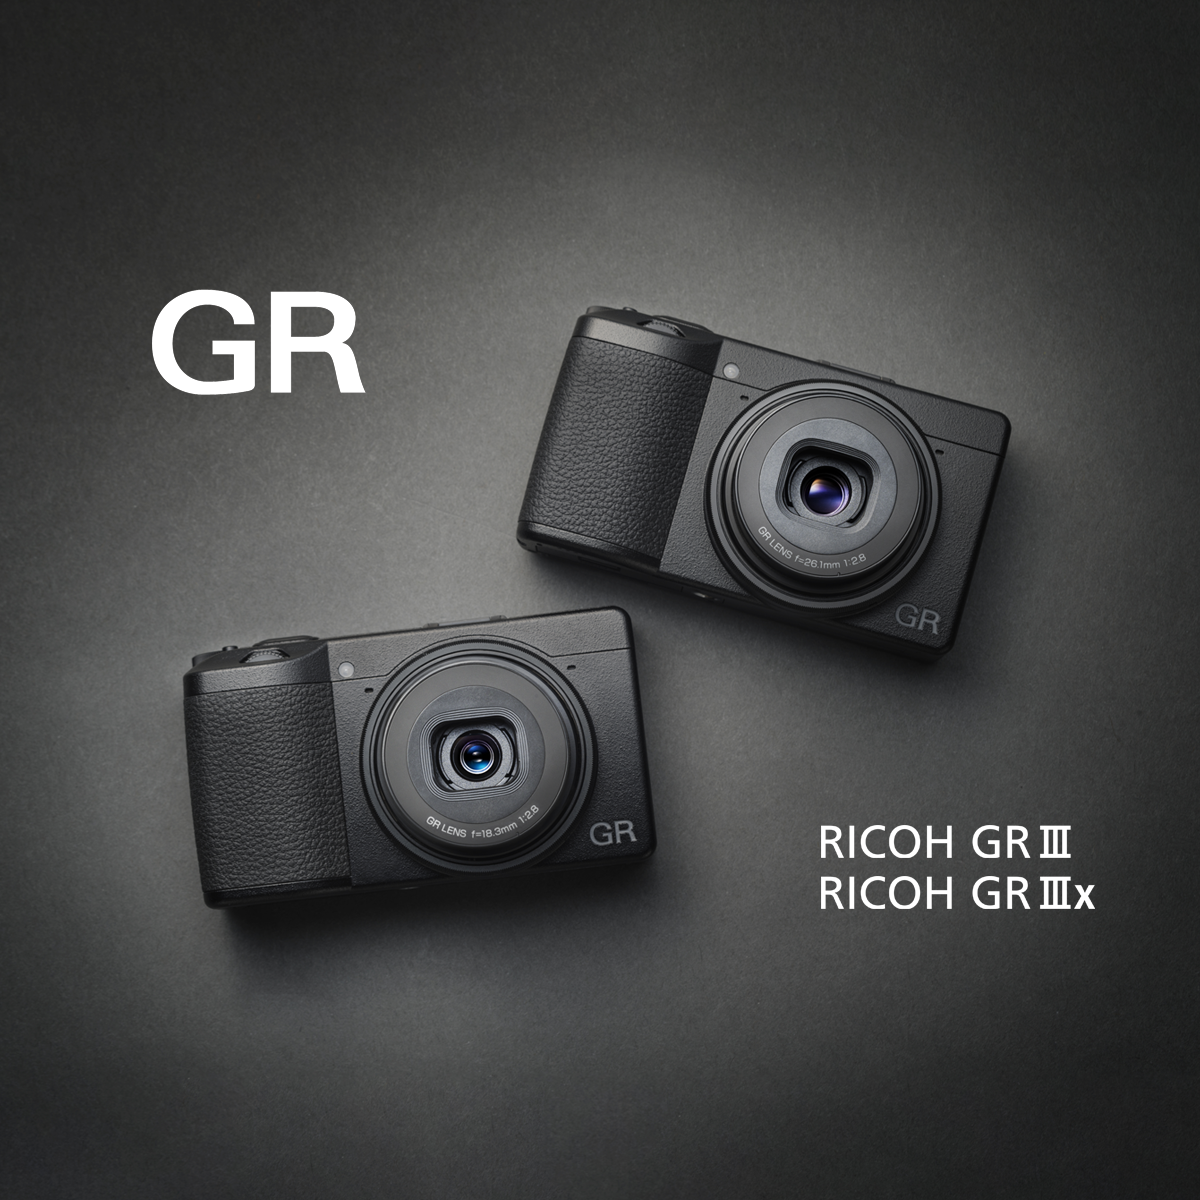 アクセサリー / RICOH GR III / GR IIIx / デジタルカメラ / 製品 